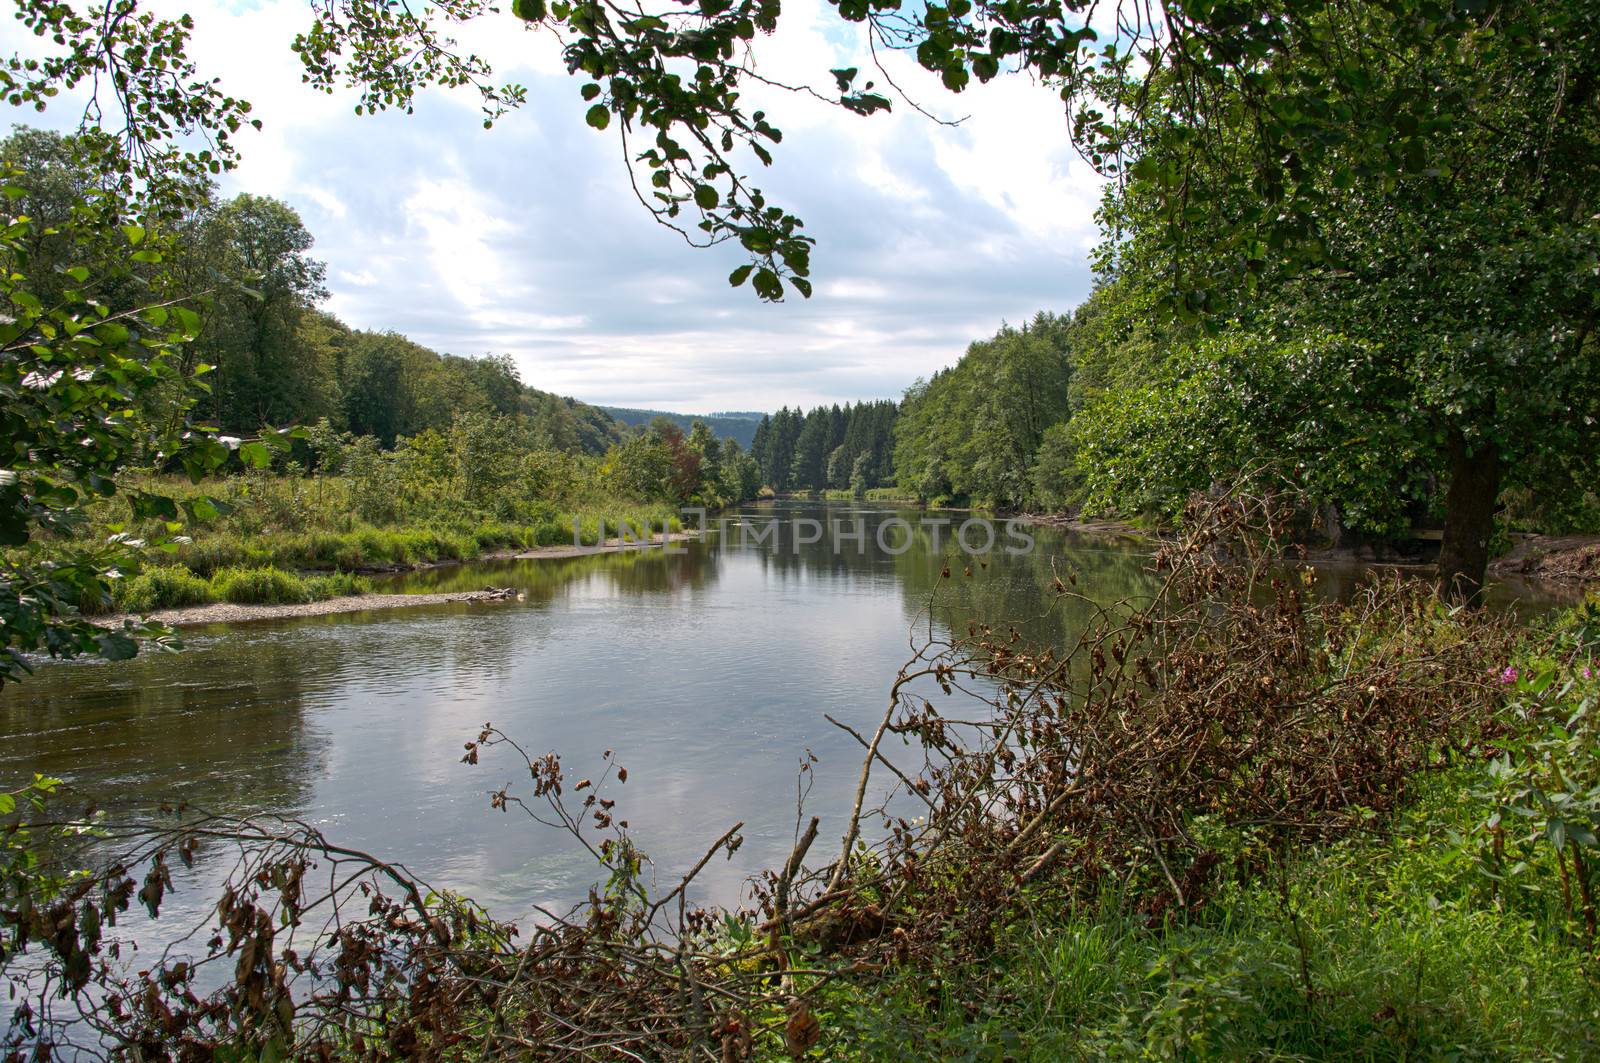 the river semois near the village bouillon in belgium ardennes